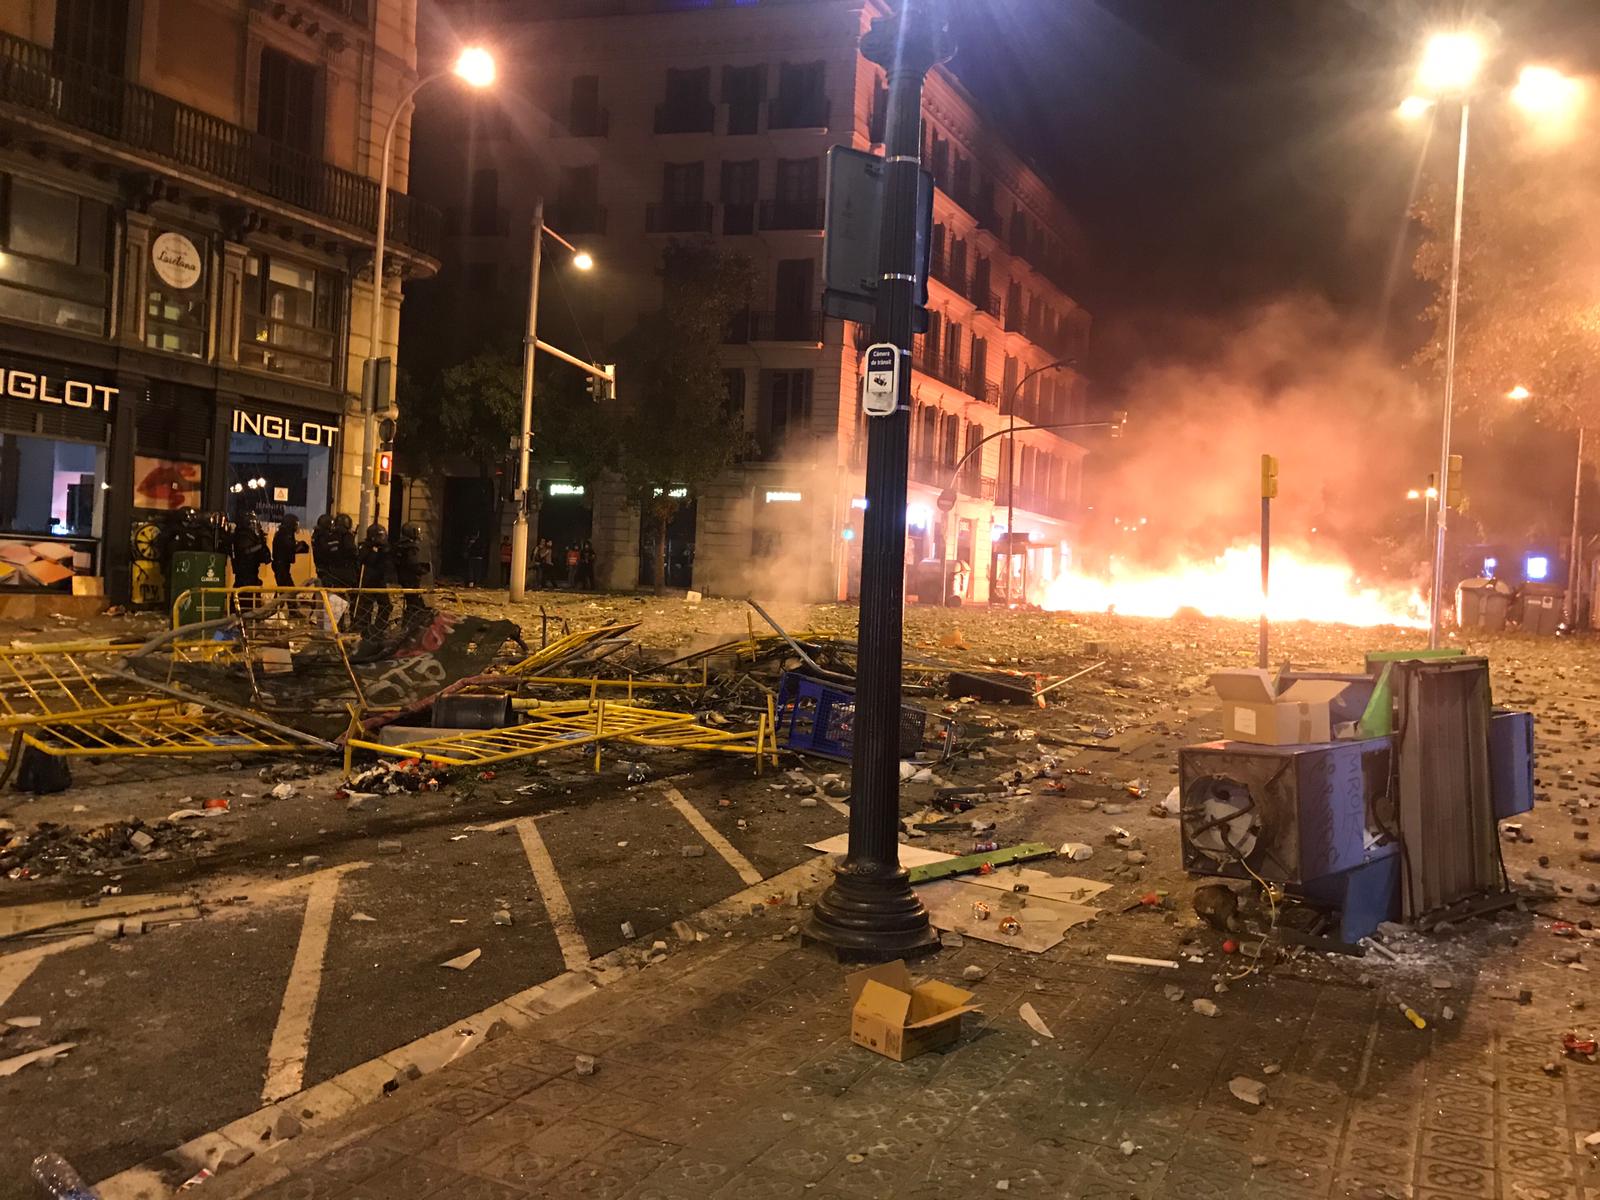 Barcelona destina 100.000 euros "para paliar" los efectos de los disturbios en comercios